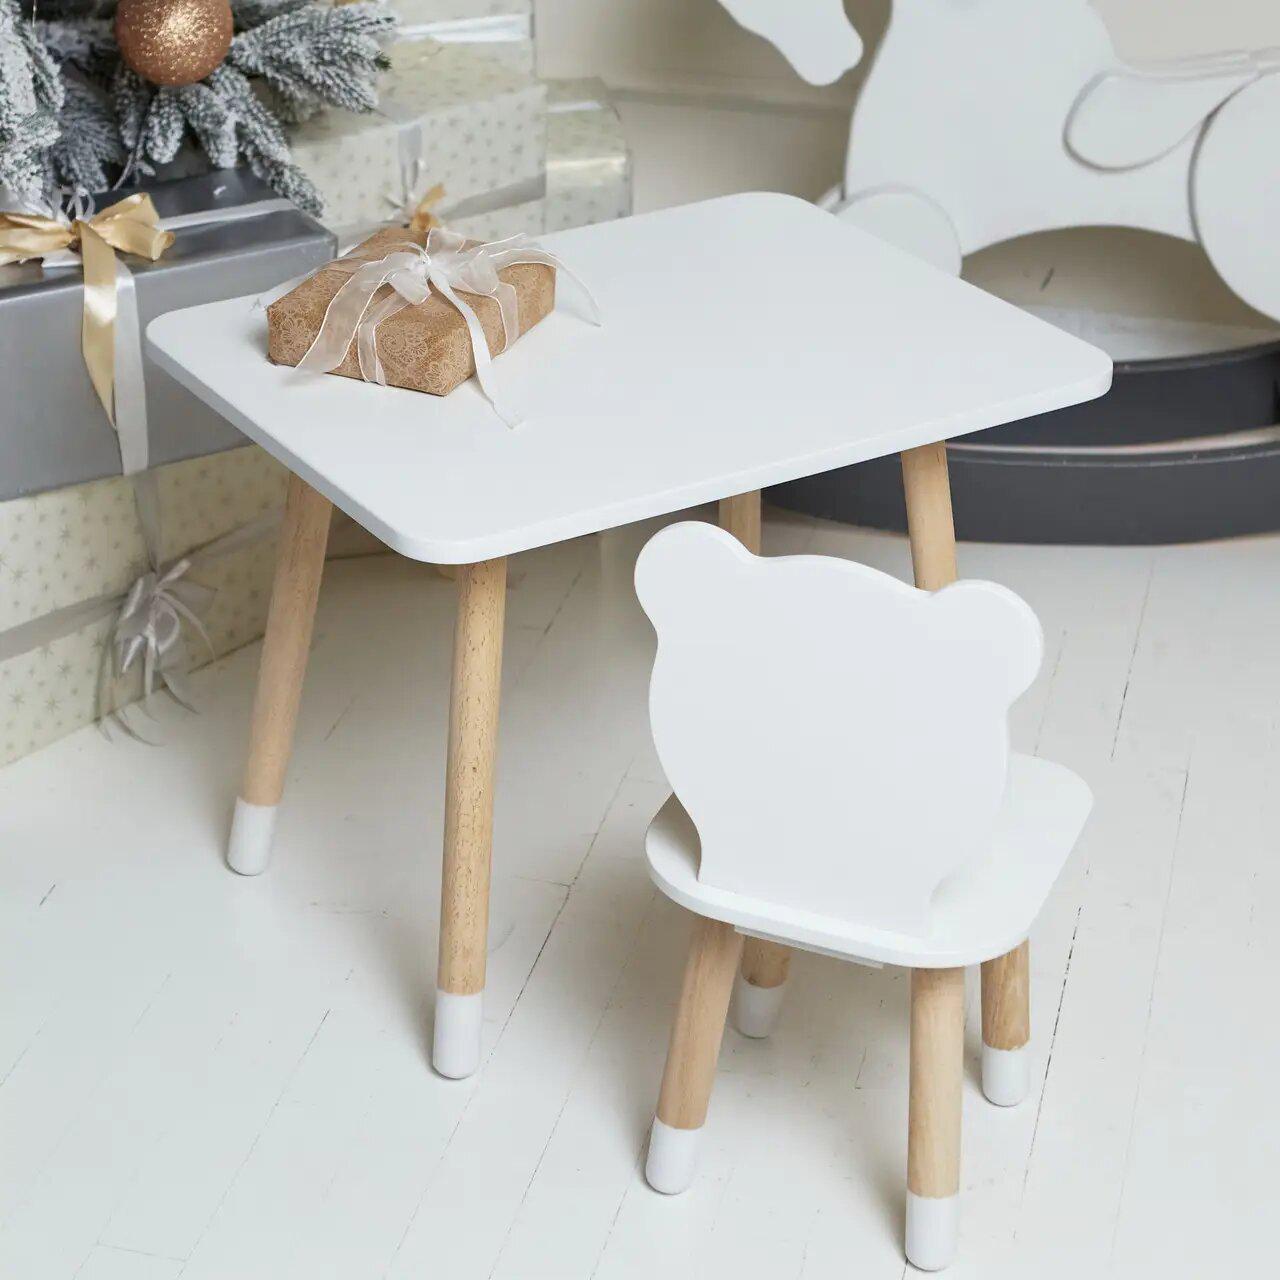 Детская мебель - столик и стульчик